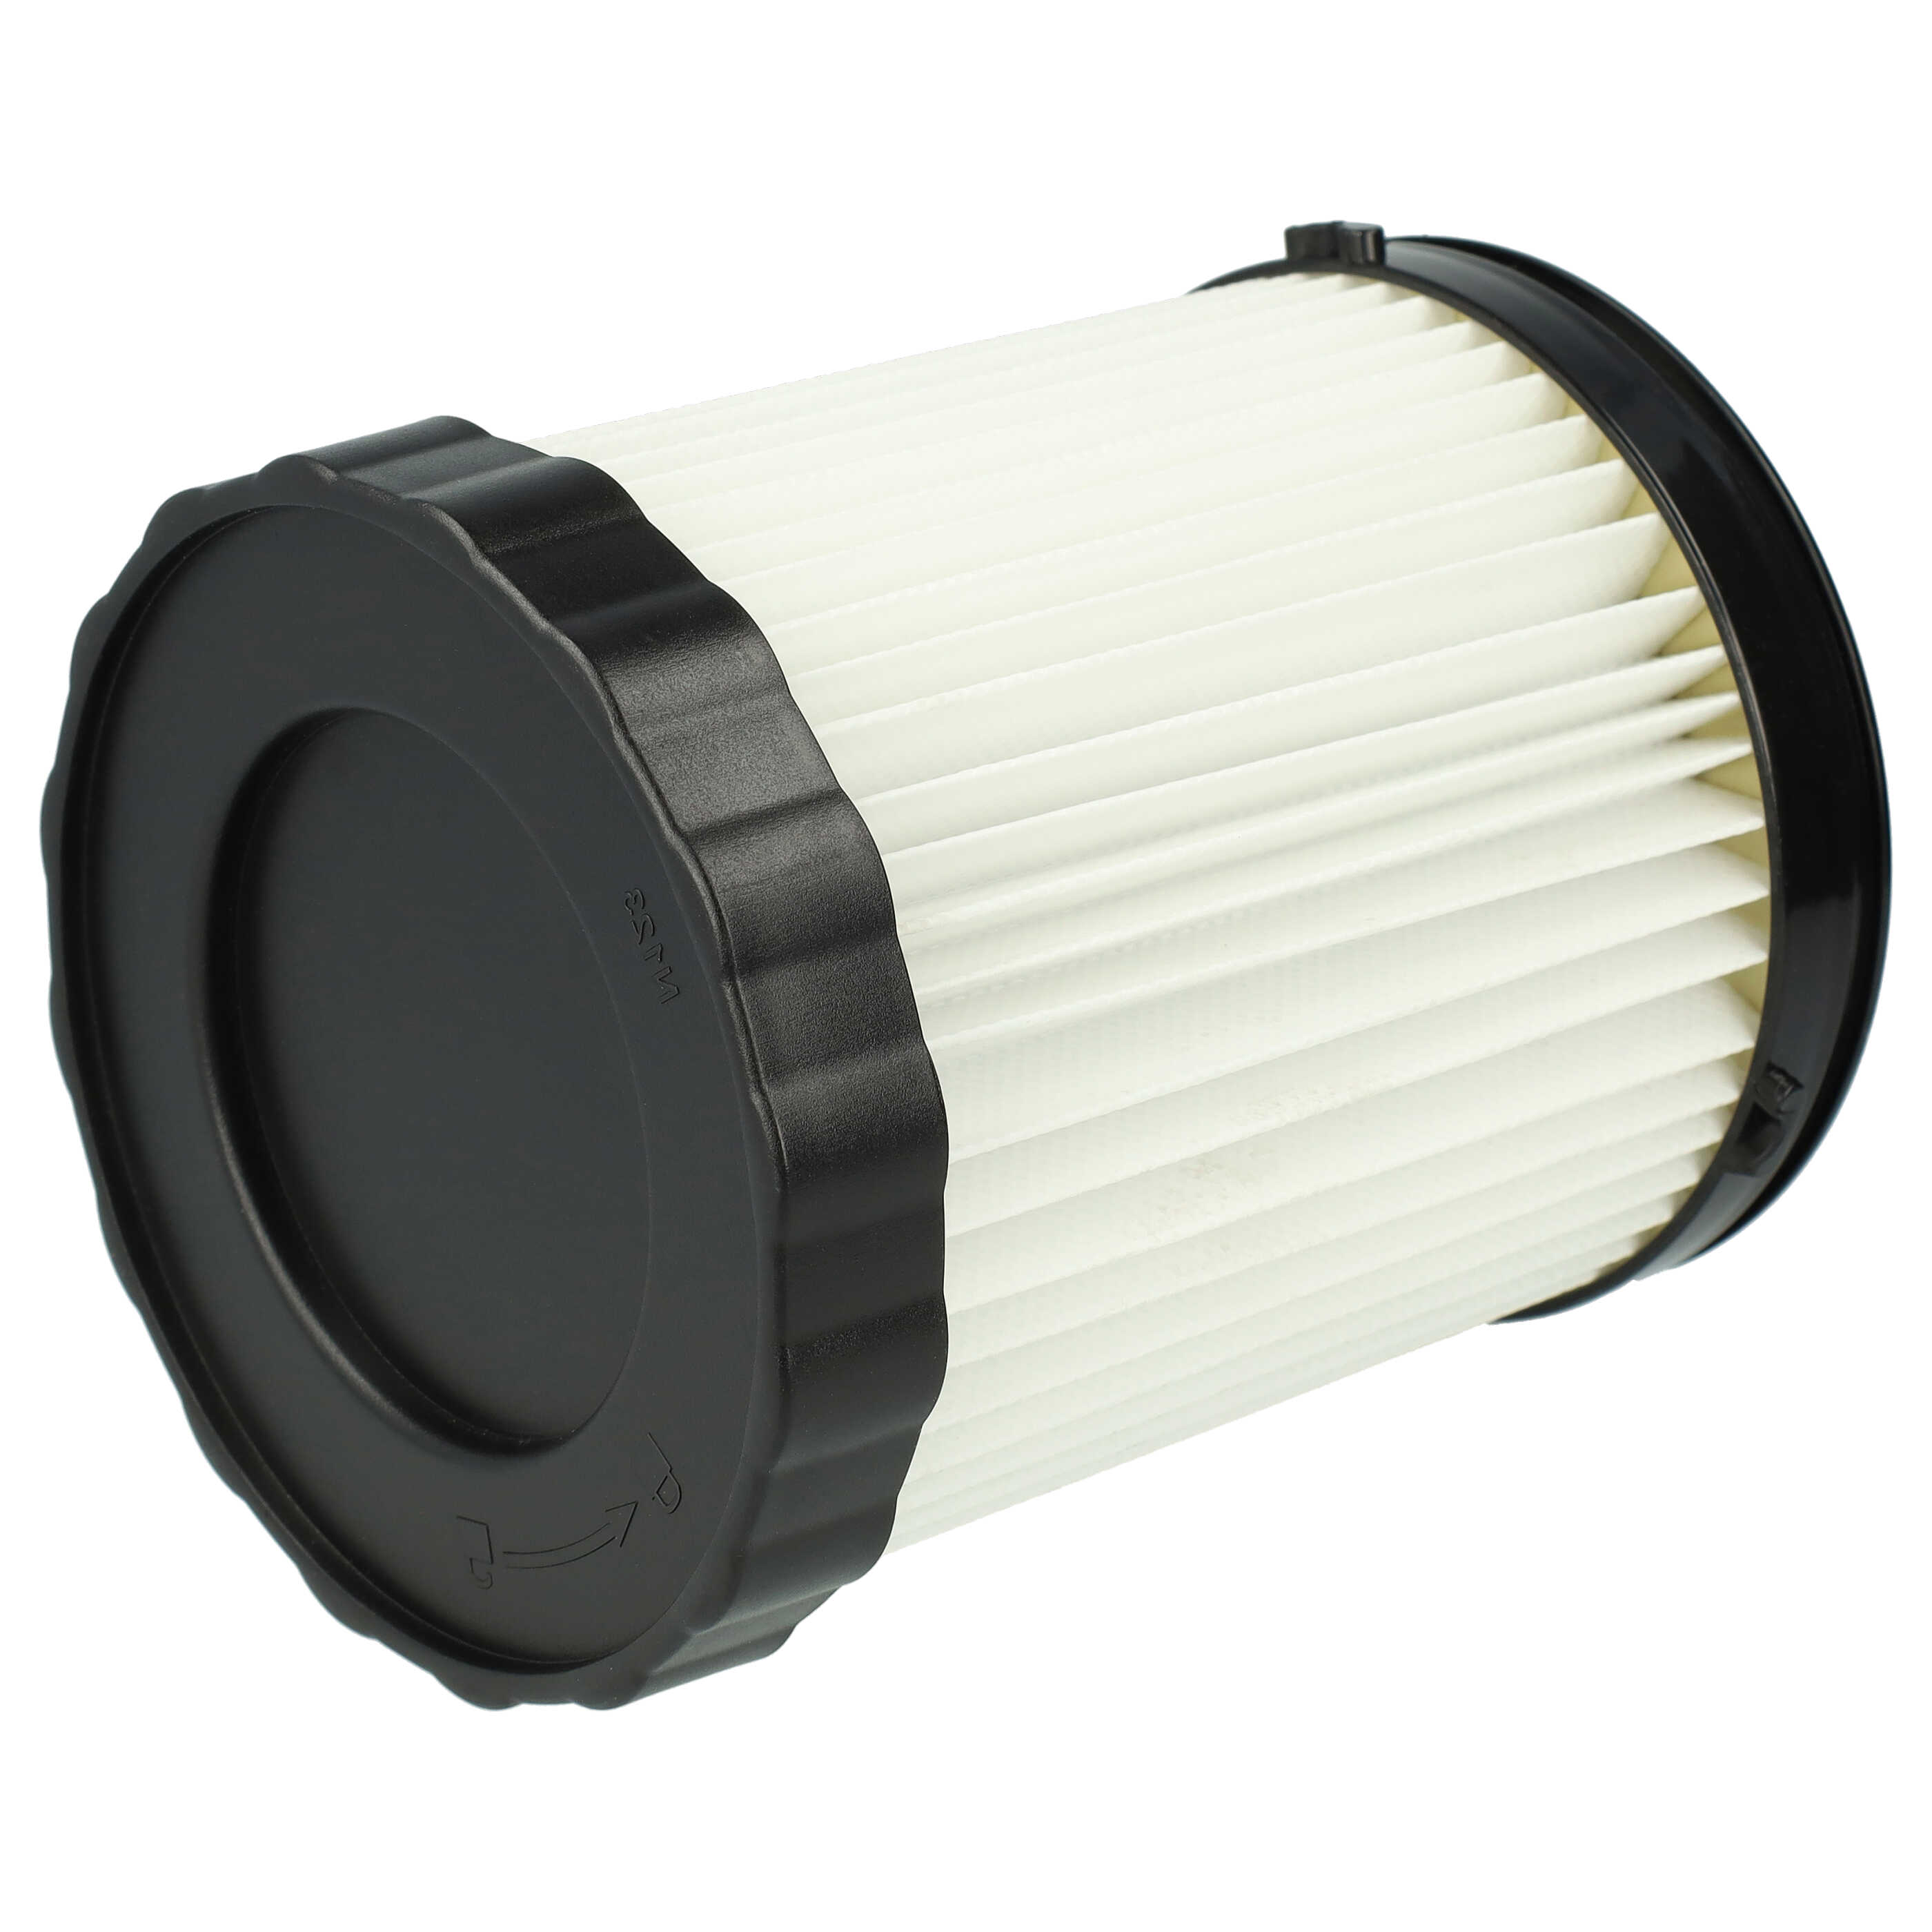 2x Filtre remplace Bosch 1 600 A01 1RT, 3165140917940, 2 608 000 663 pour aspirateur - filtre plissé